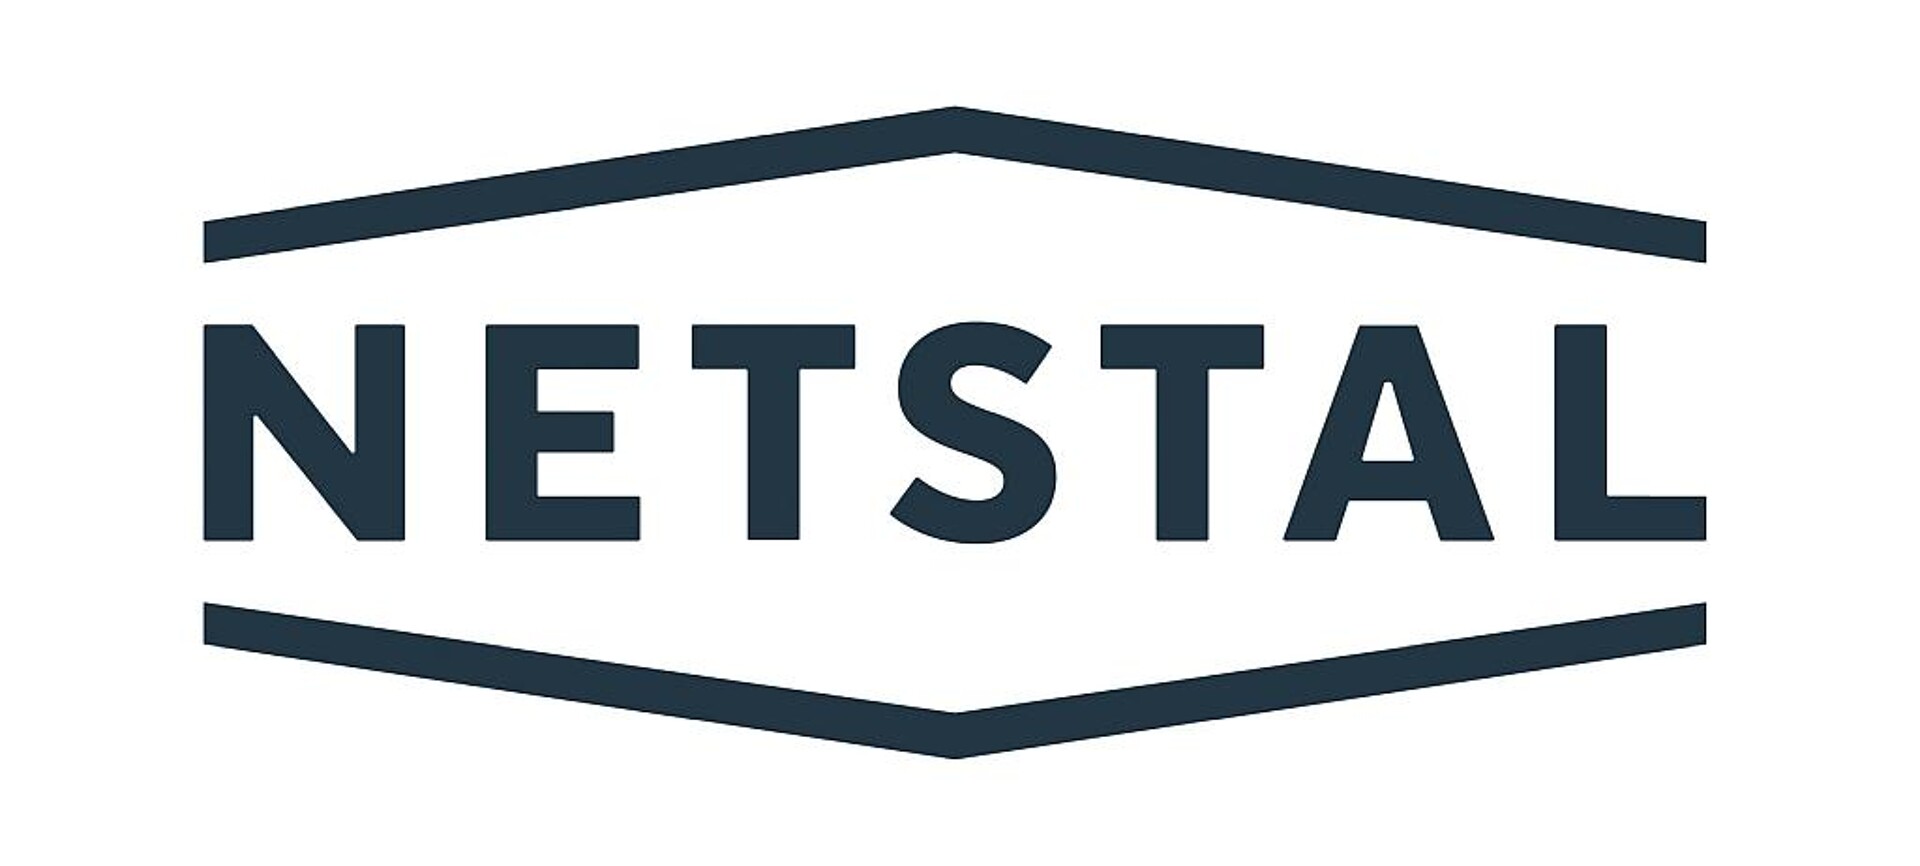 Behutsam modernisiert: Das neue Markenlogo von Netstal. (Abb.: Netstal)